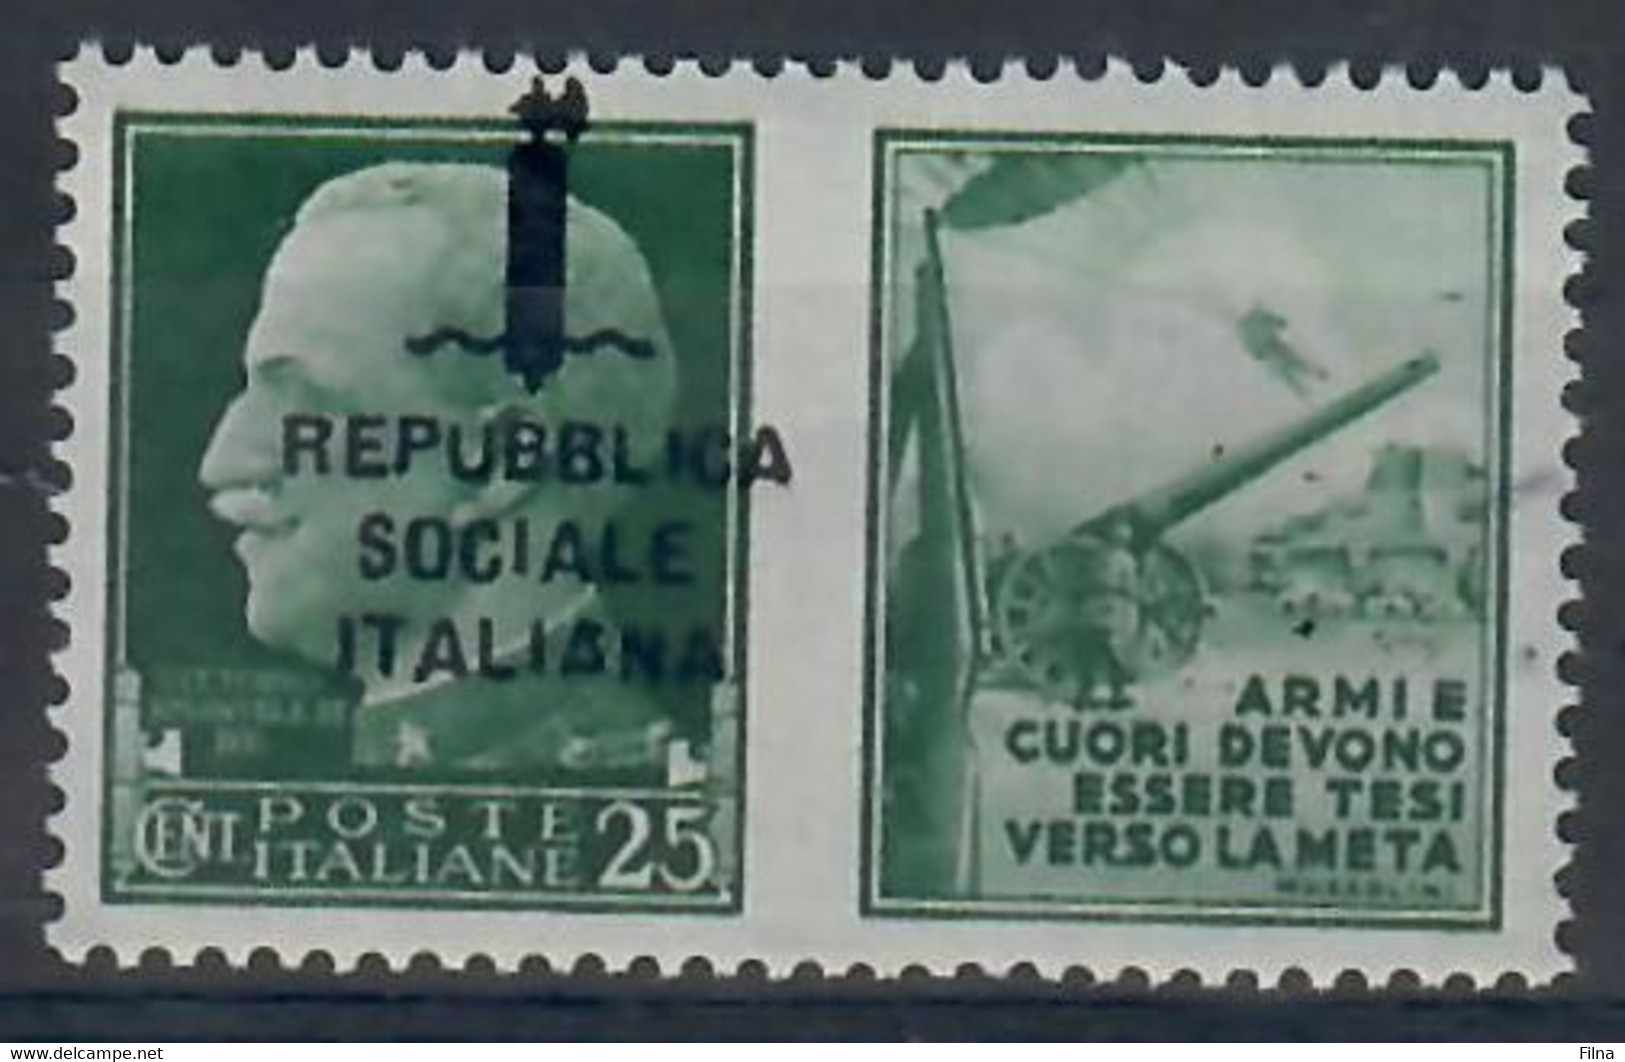 ITALIA - REPUBBLICA SOCIALE ITALIANA 1944 - PROPAGANDA DI GUERRA - 25 C. - VARIETA' SOPRASTAMPA SPOSTATA  - MNH/** - Kriegspropaganda